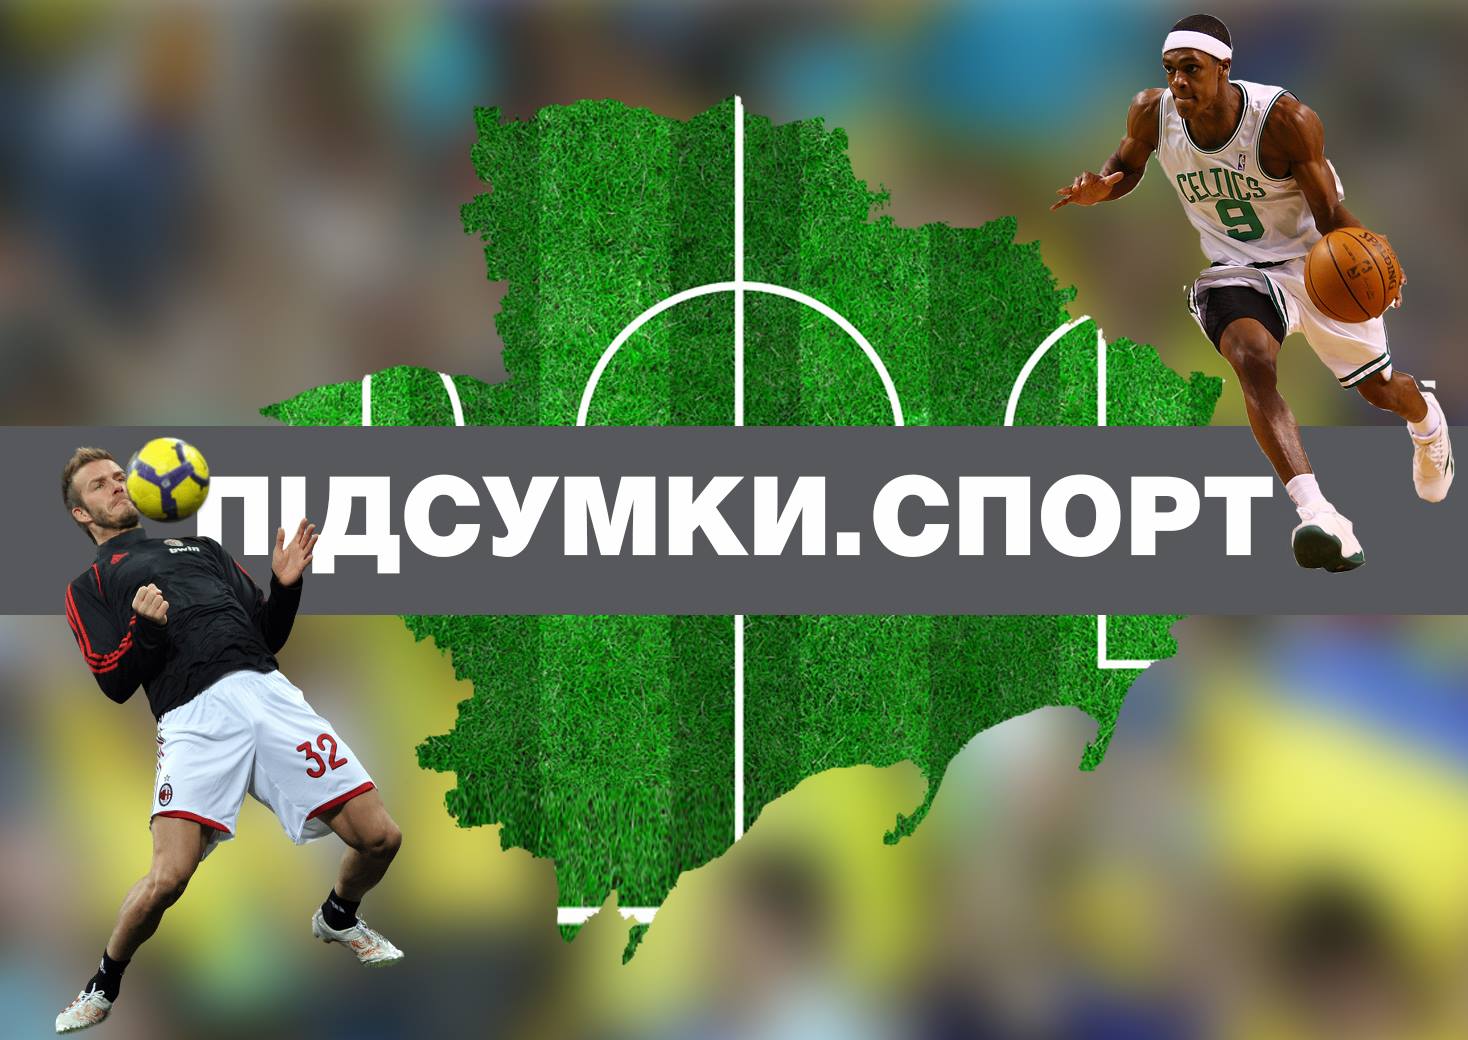 Сборная Украины по гандболу может выйти на Евро 2020, обвинения УЕФА, сильнейшим богатырем Узбекистана стал Украинец – спортивные итоги четверга